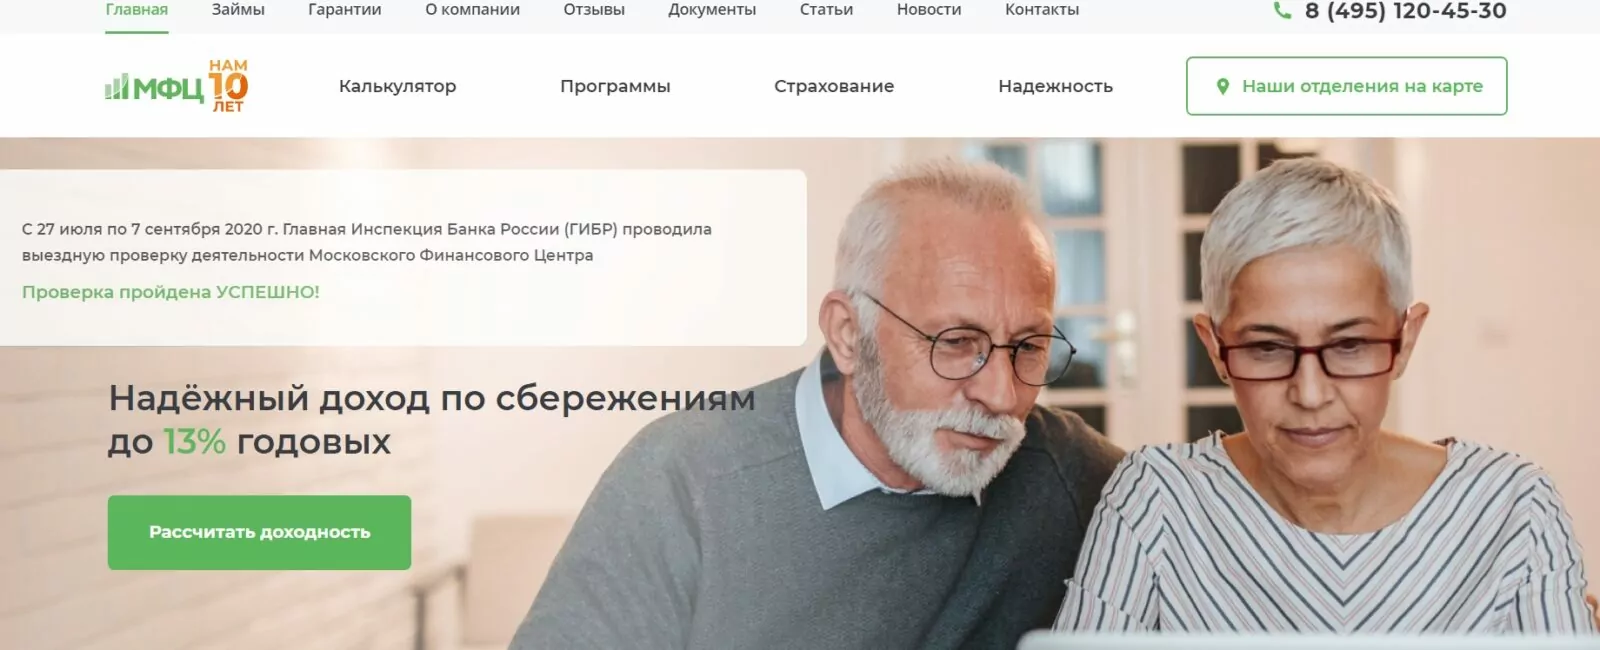 Сайт КПК Московский финансовый центр 